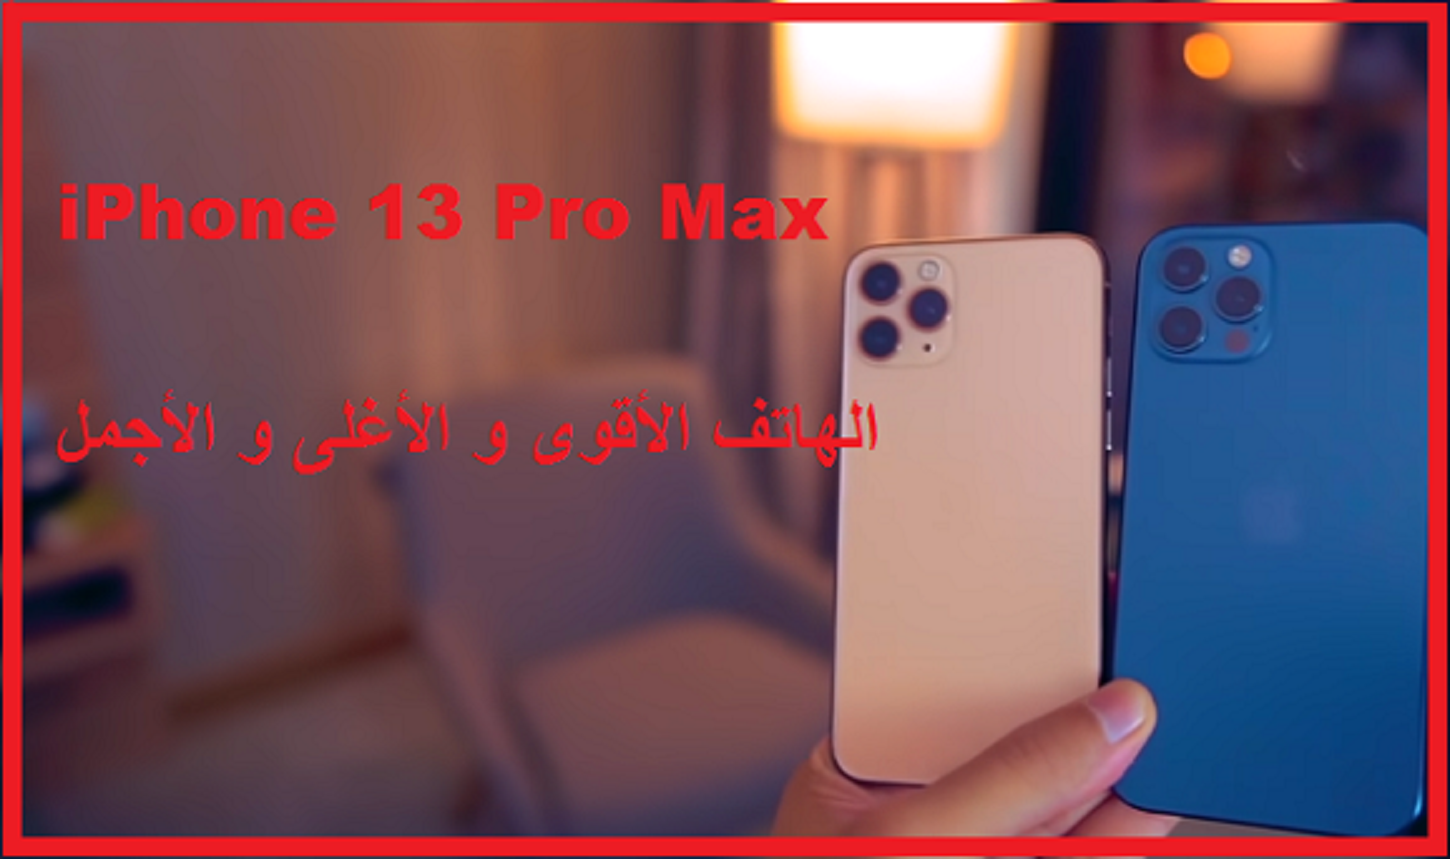 13 برو stc ايفون max iPhone 13